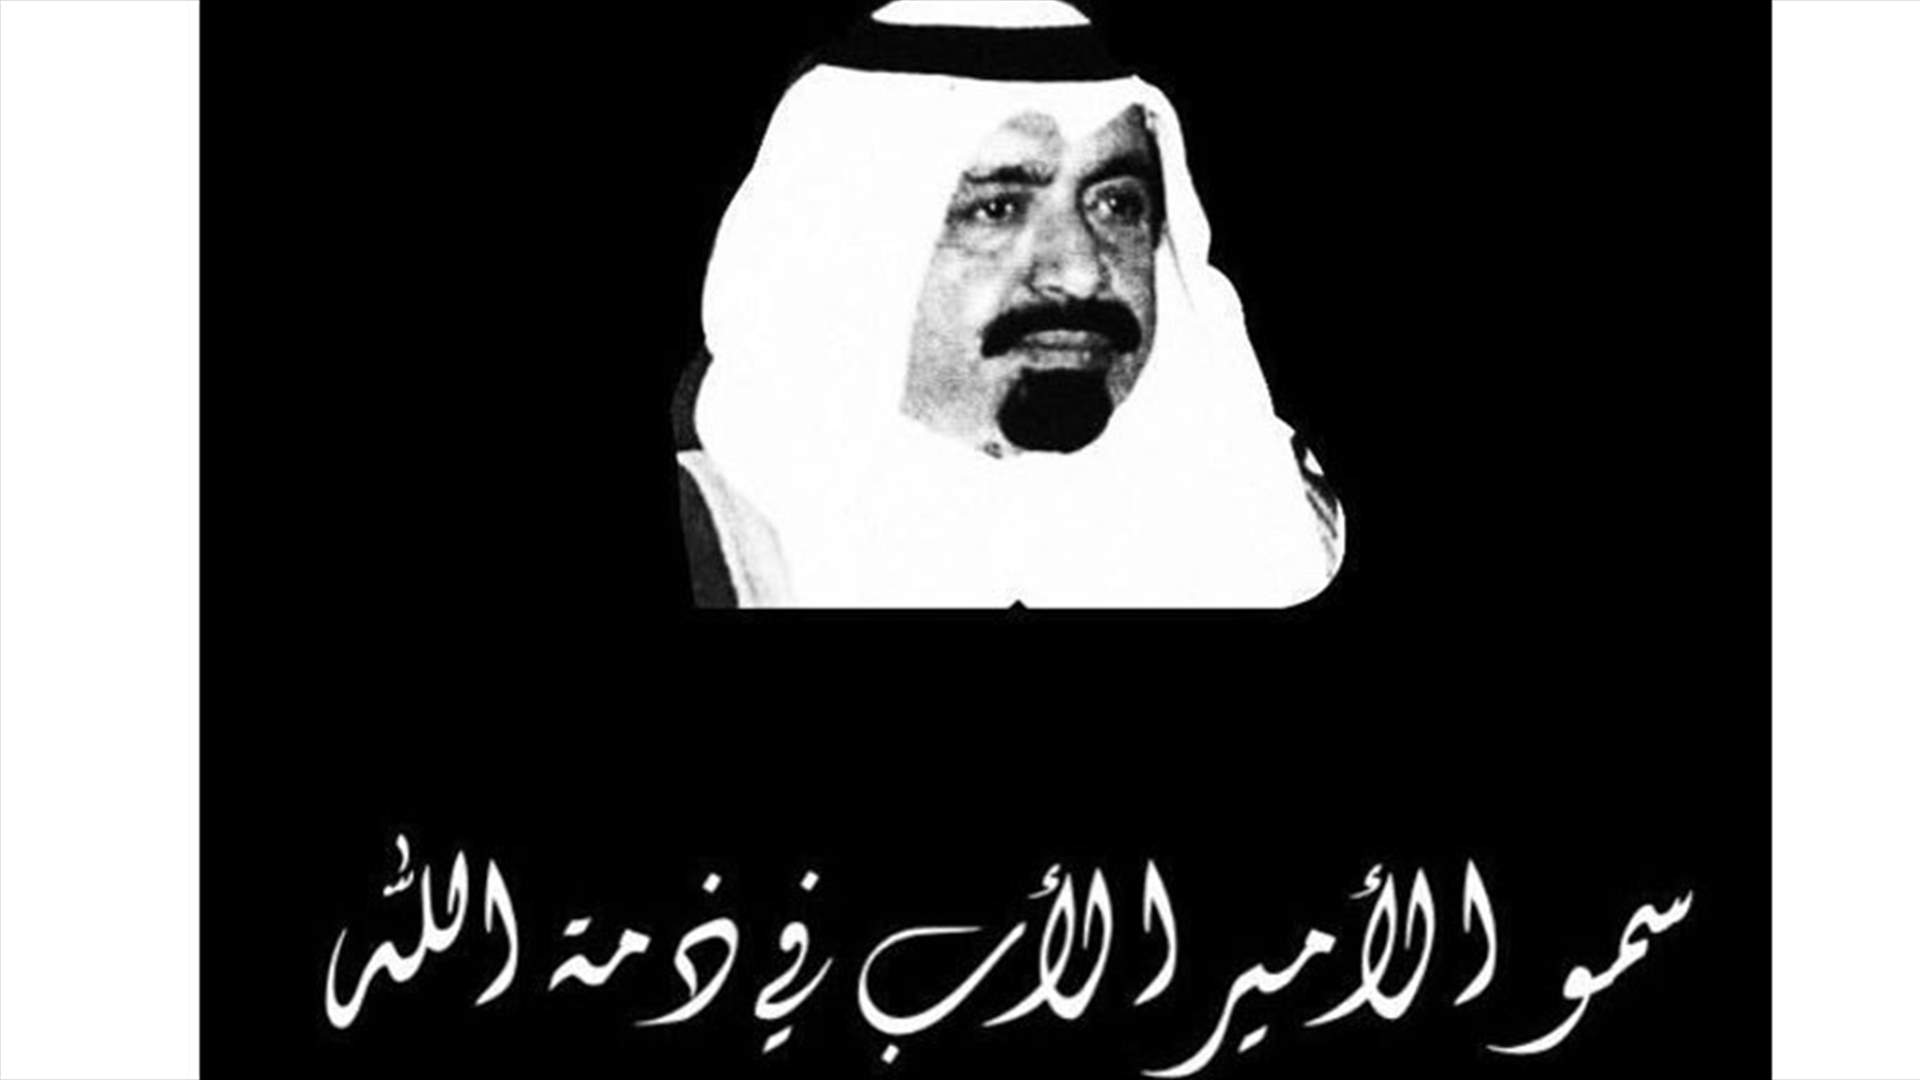 وفاة الأمير الأب في دولة قطر الشيخ خليفة بن حمد آل ثاني